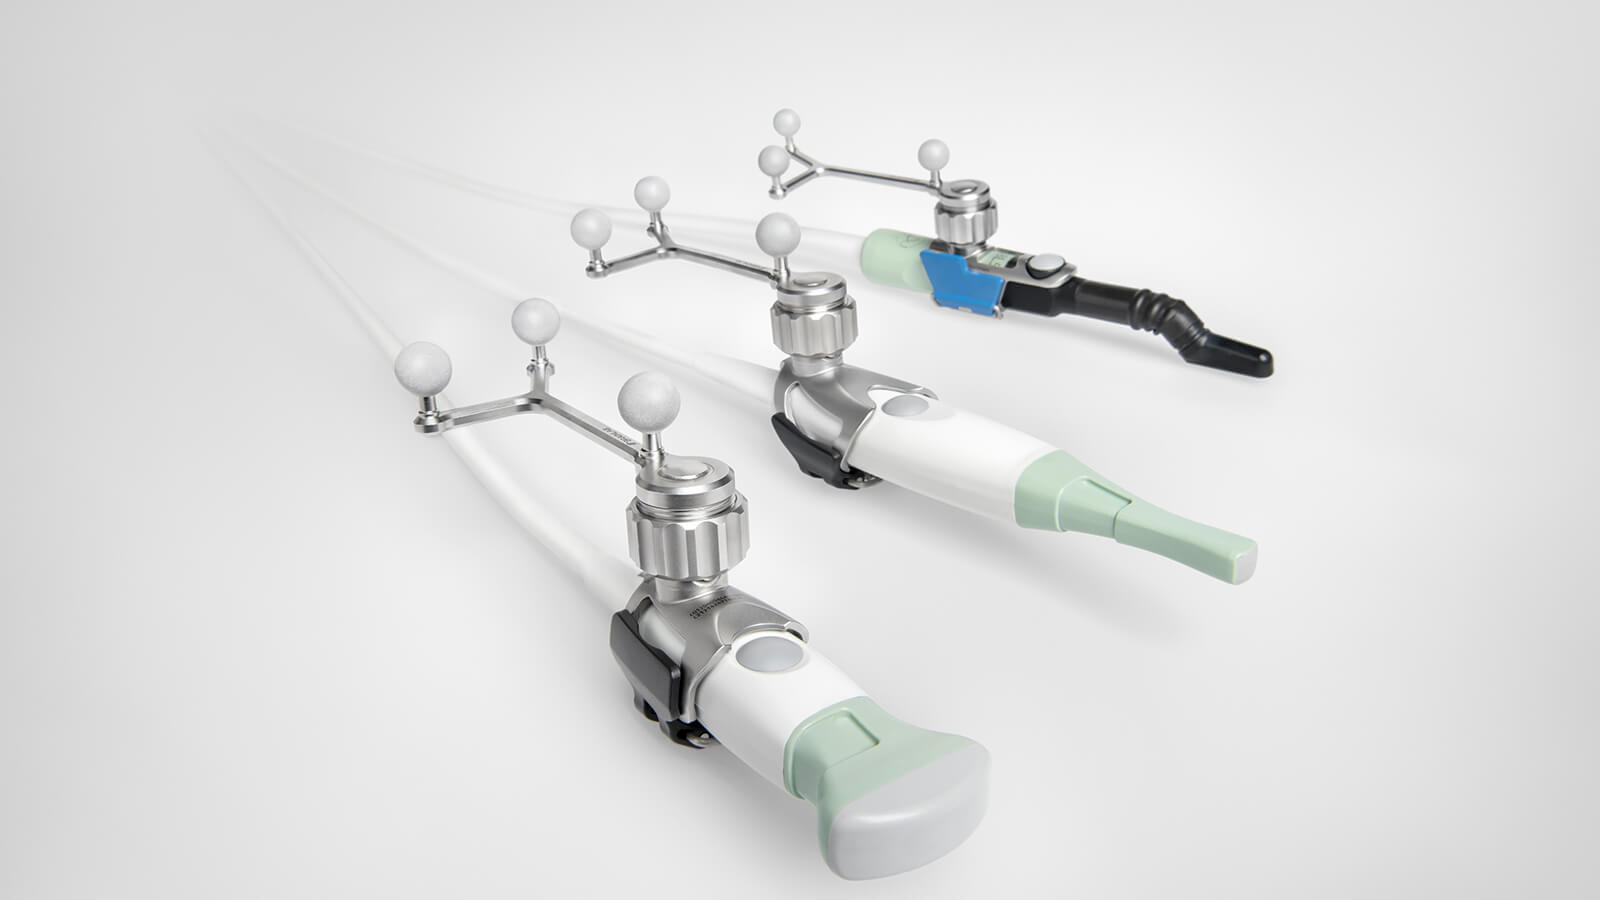 Transdutores neurocirúrgicos pré-calibrados e esterilizáveis para suporte a fluxos de trabalho plug-and-play otimizados